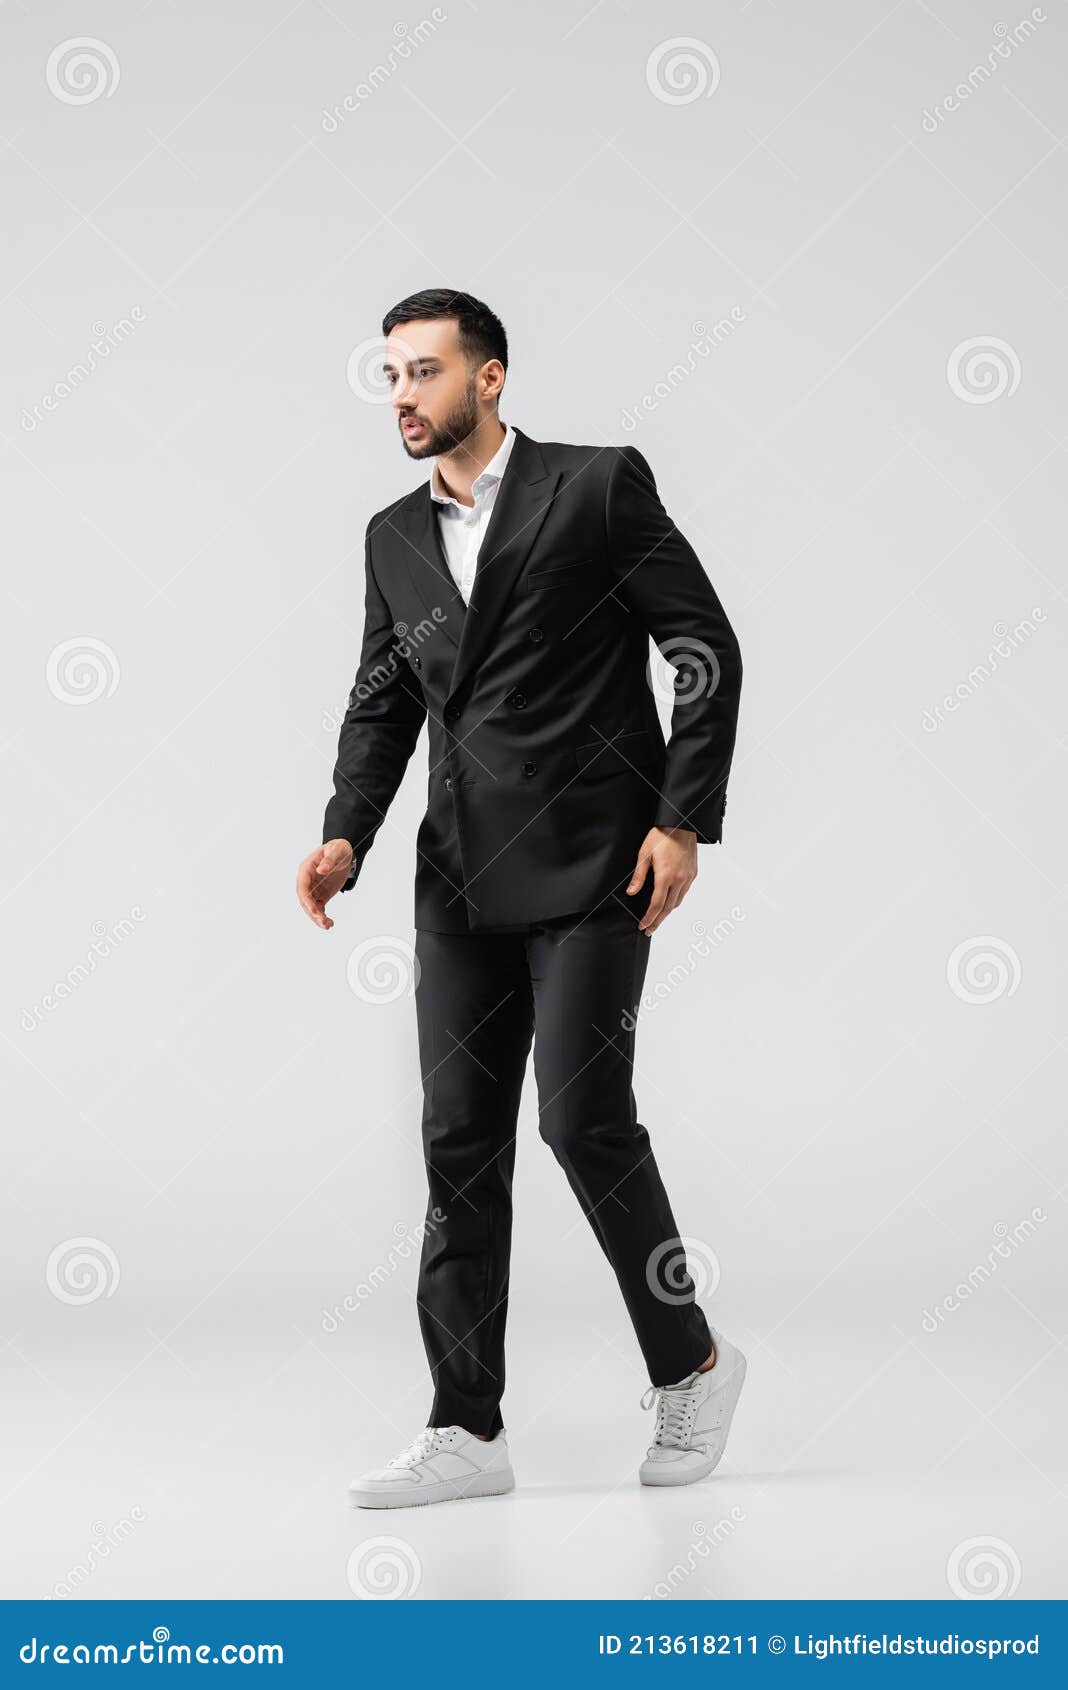 trendy muslim man black suit trendy muslim man black suit sneakers looking away walking grey stock image 213618211